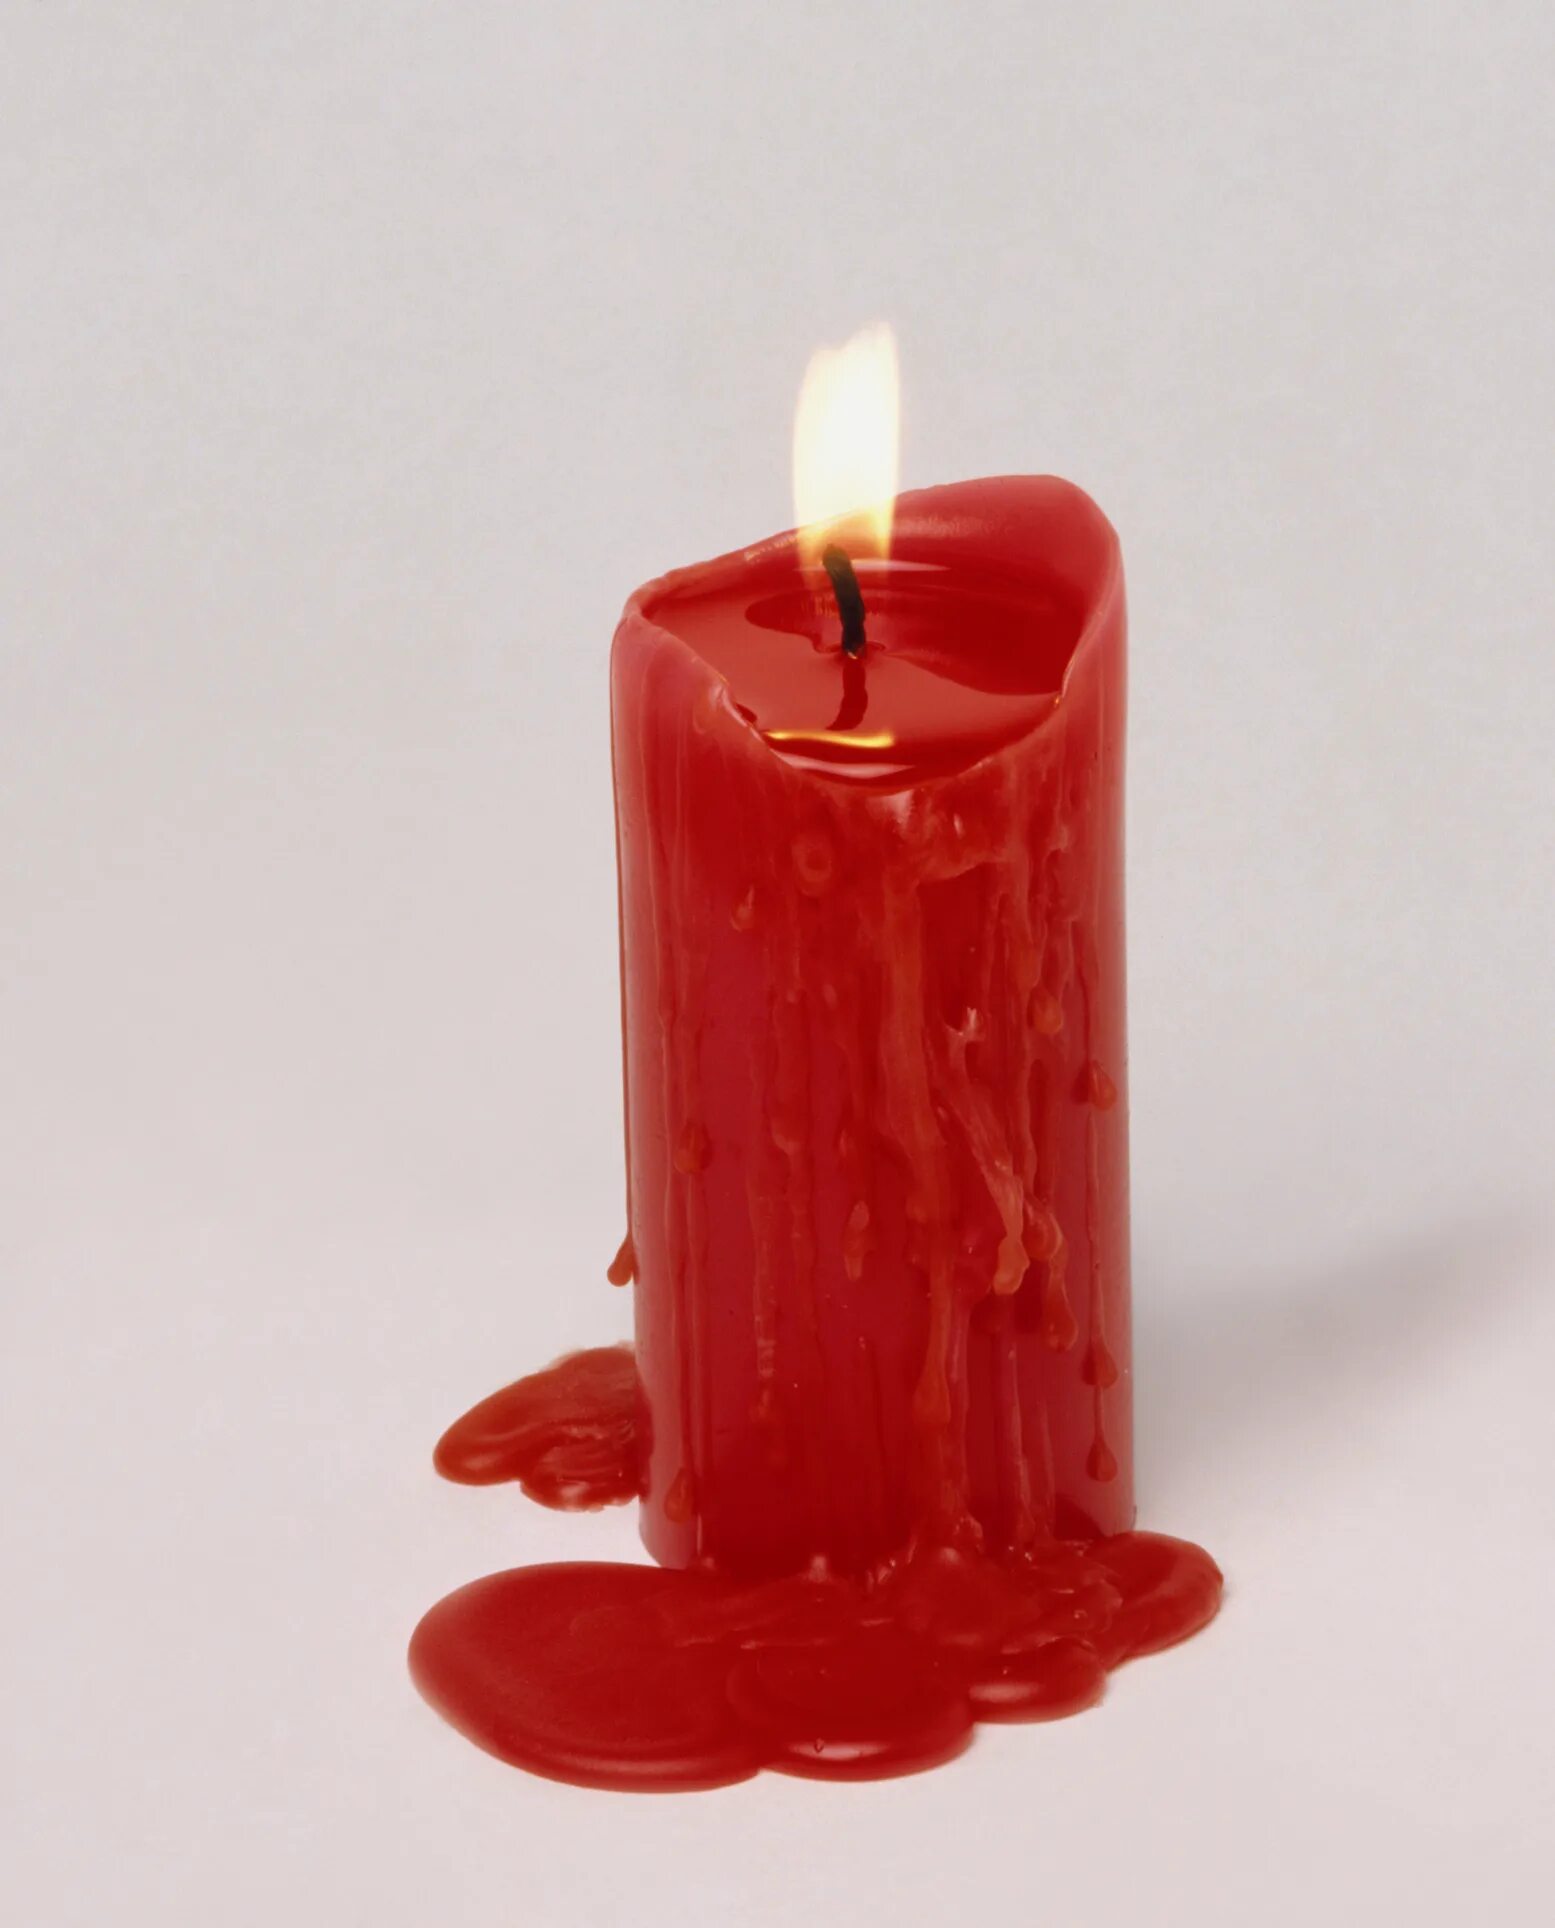 Красная свеча. Воск для свечей. Восковые свечи. Свечи красные восковые. Что означает красная свеча